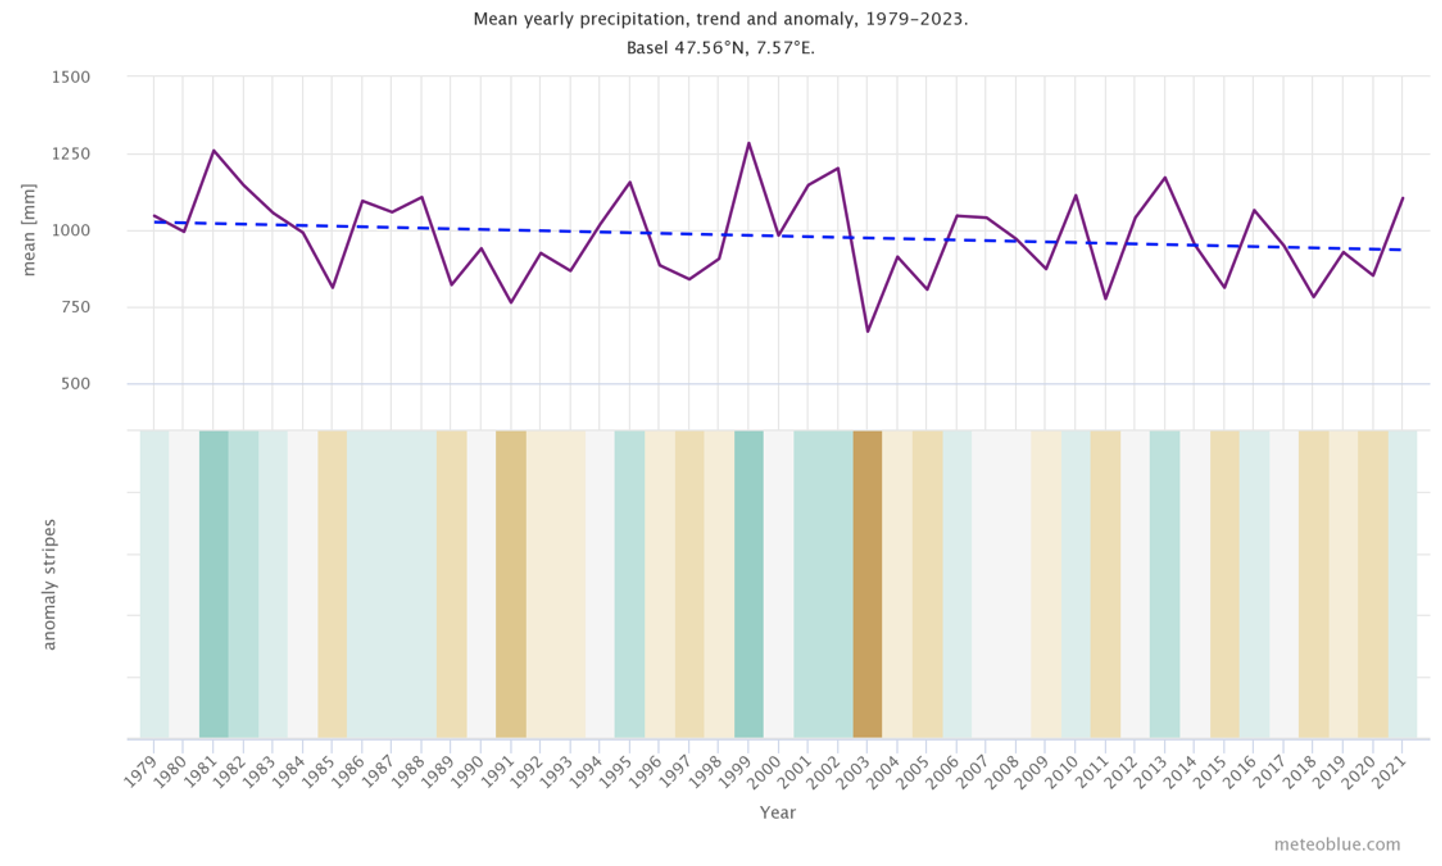 Precipitazioni medie annuali, tendenza e anomalia per Basilea, Svizzera.